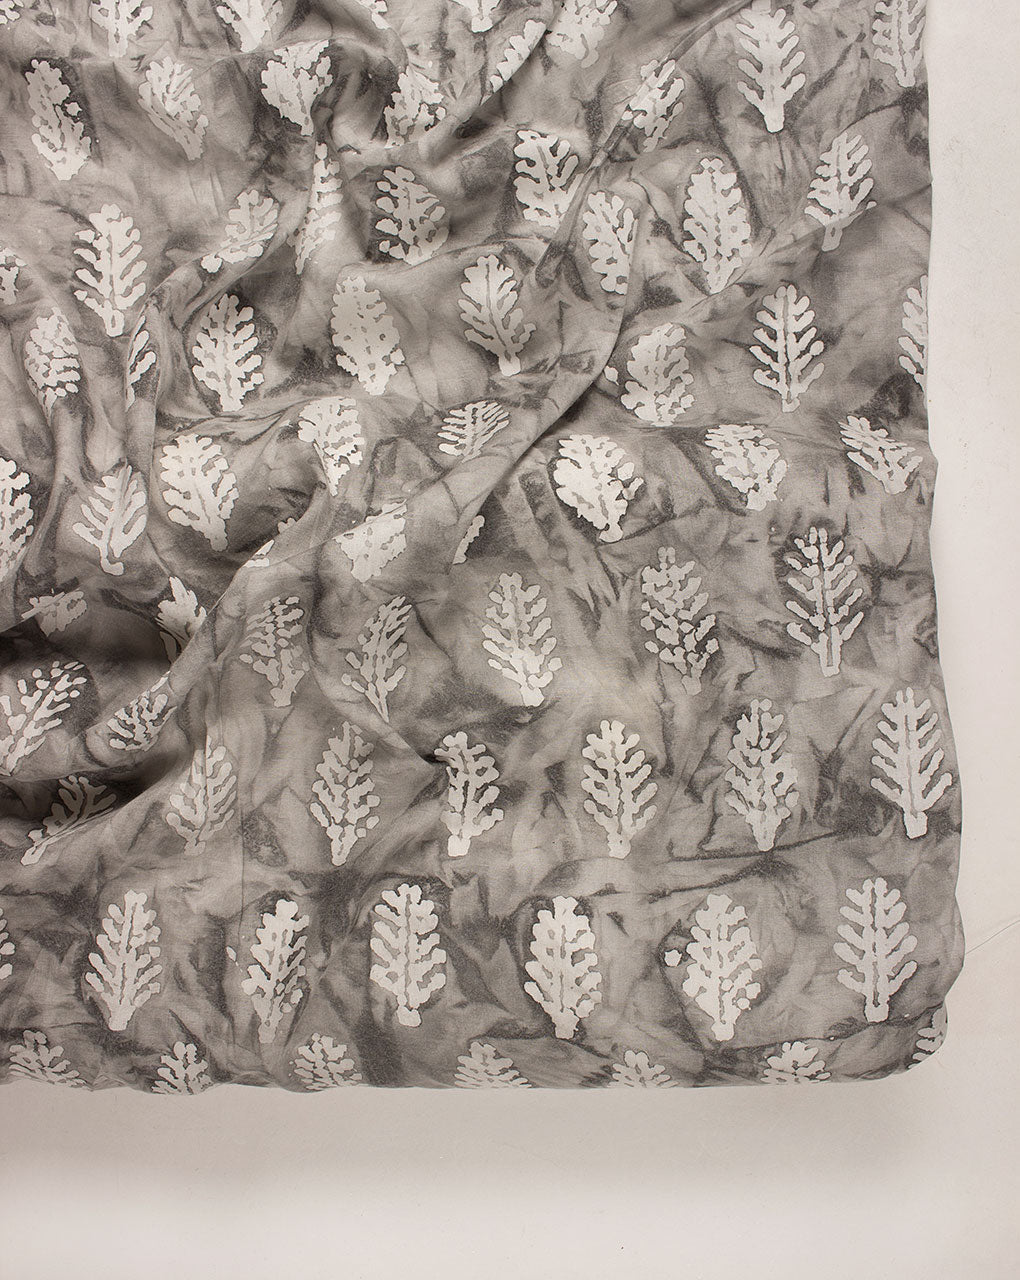 Hand Block Wax Batik Modal Fabric